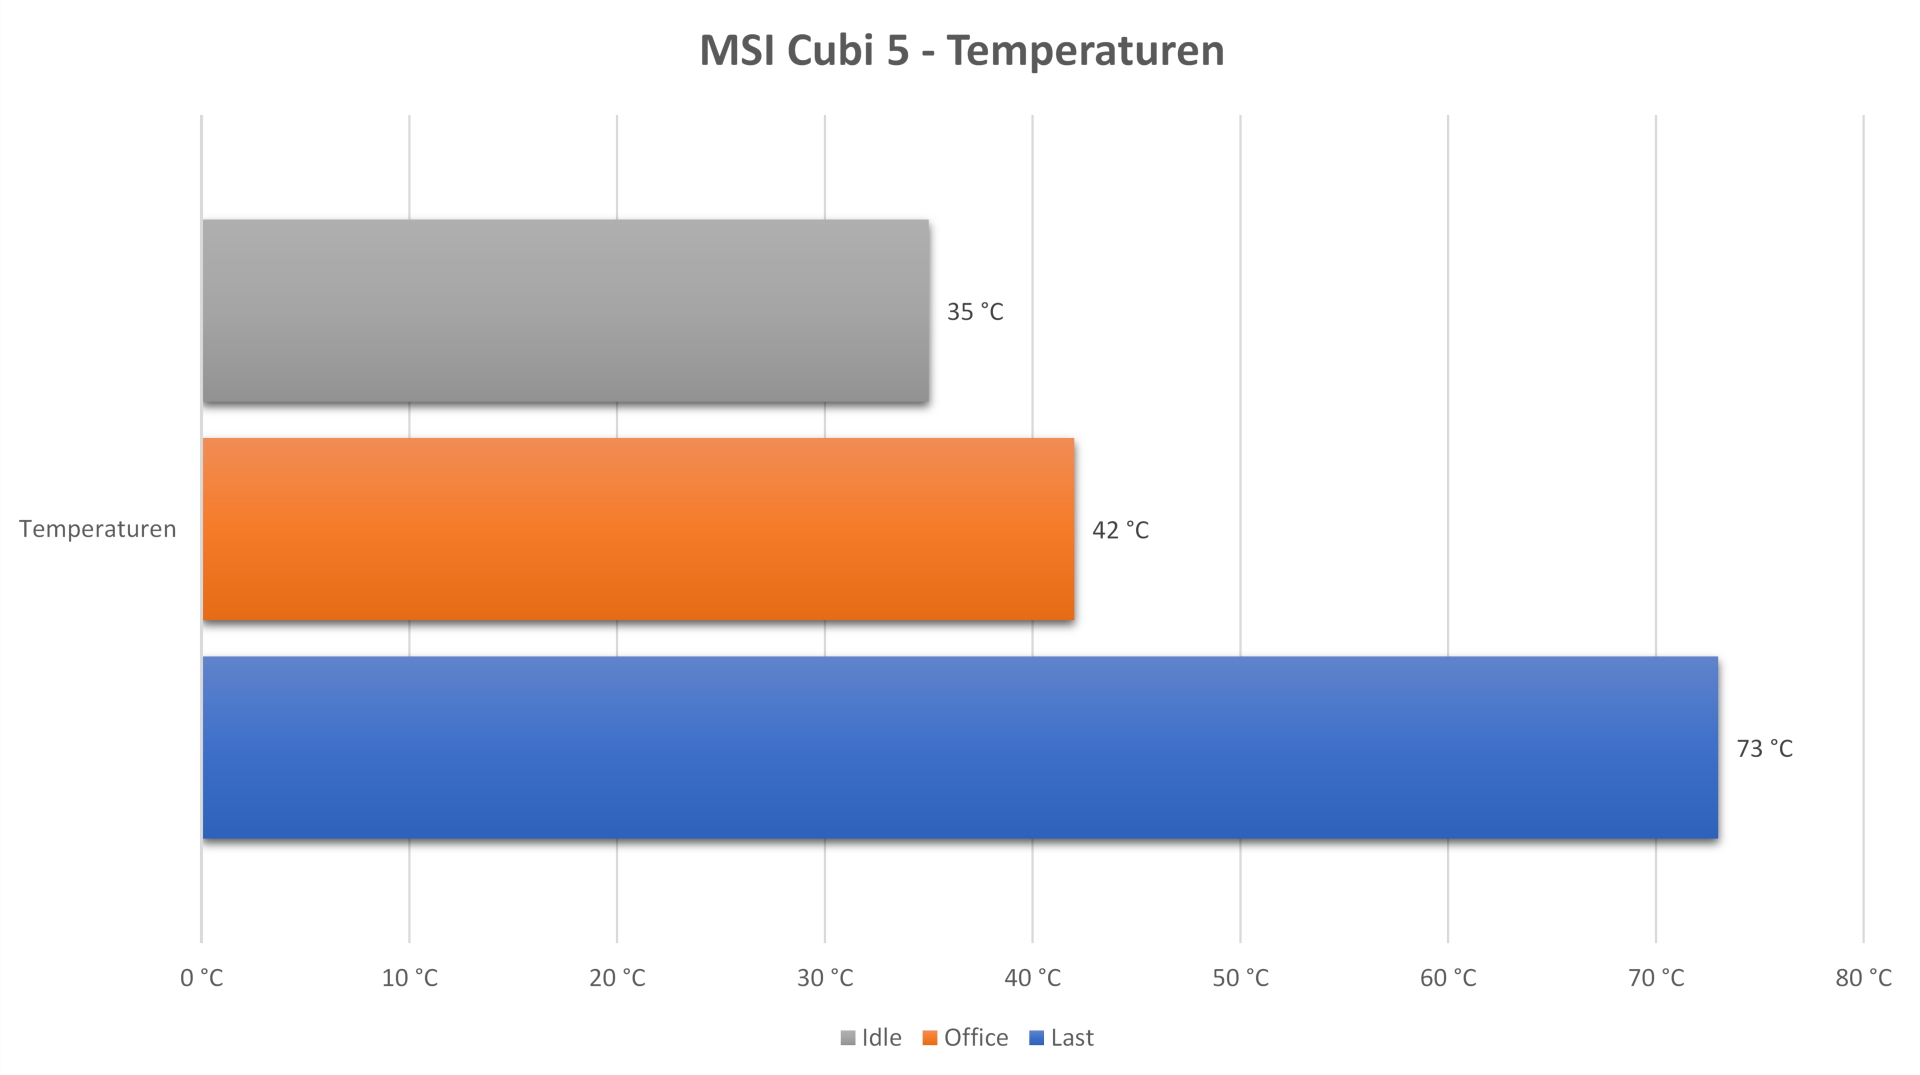 msi_cubi_5_temperaturen.jpg